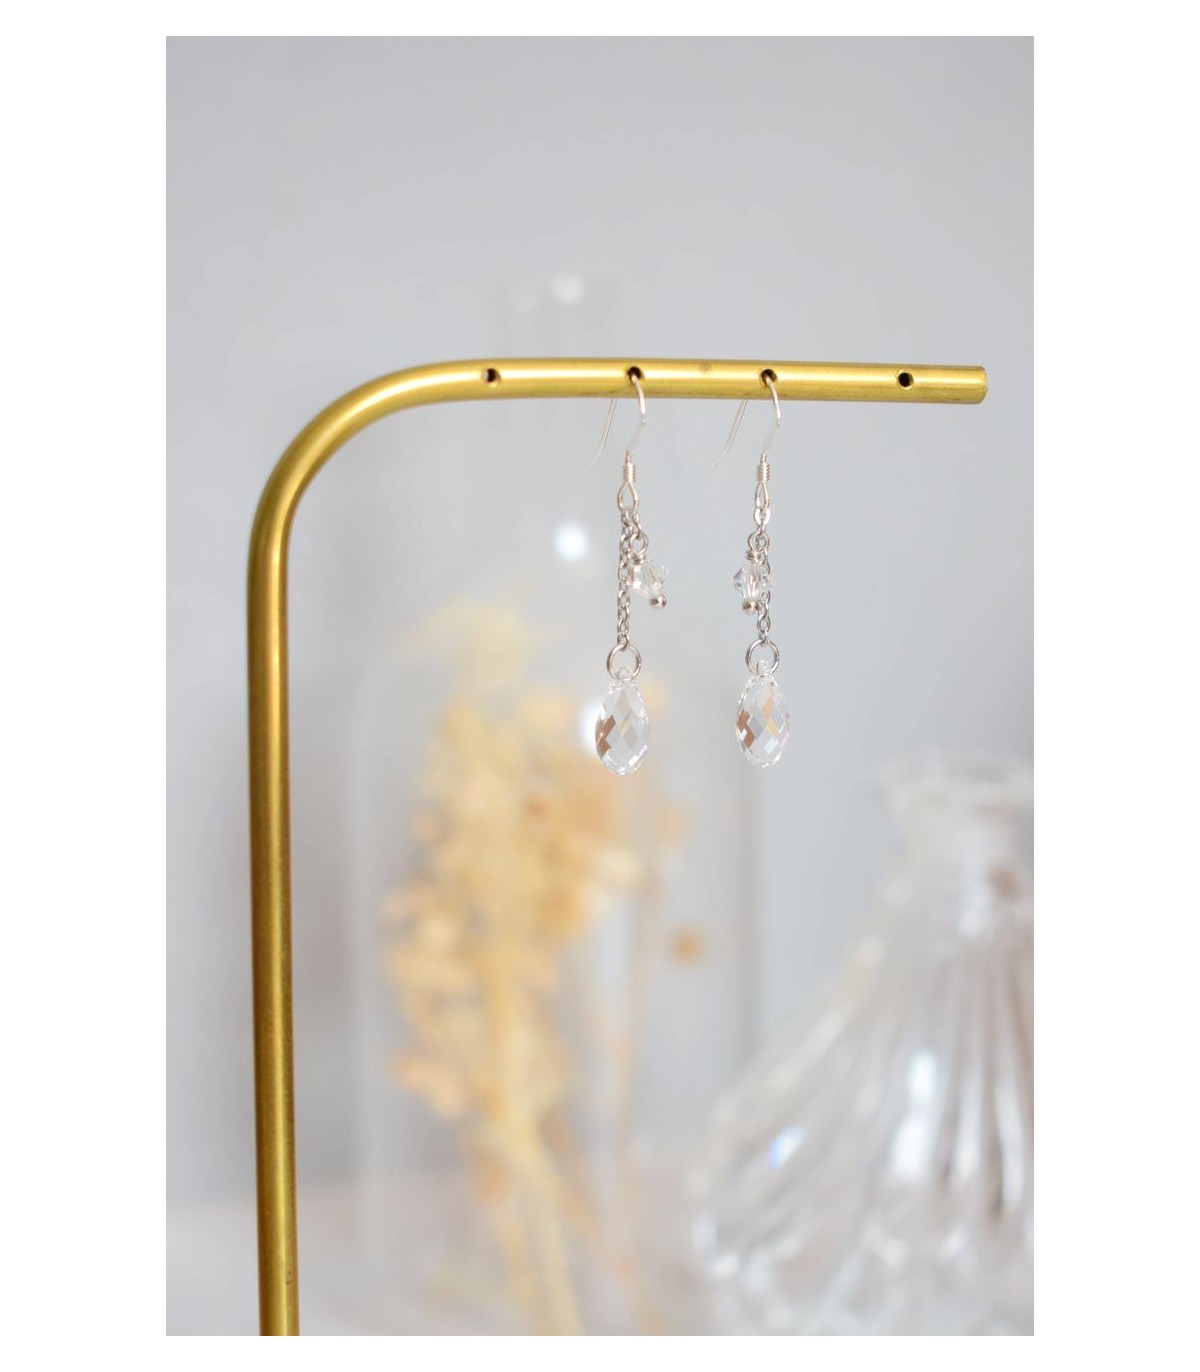 Boucles d'oreilles de mariage argentées et discrètes avec des perles de cristal.